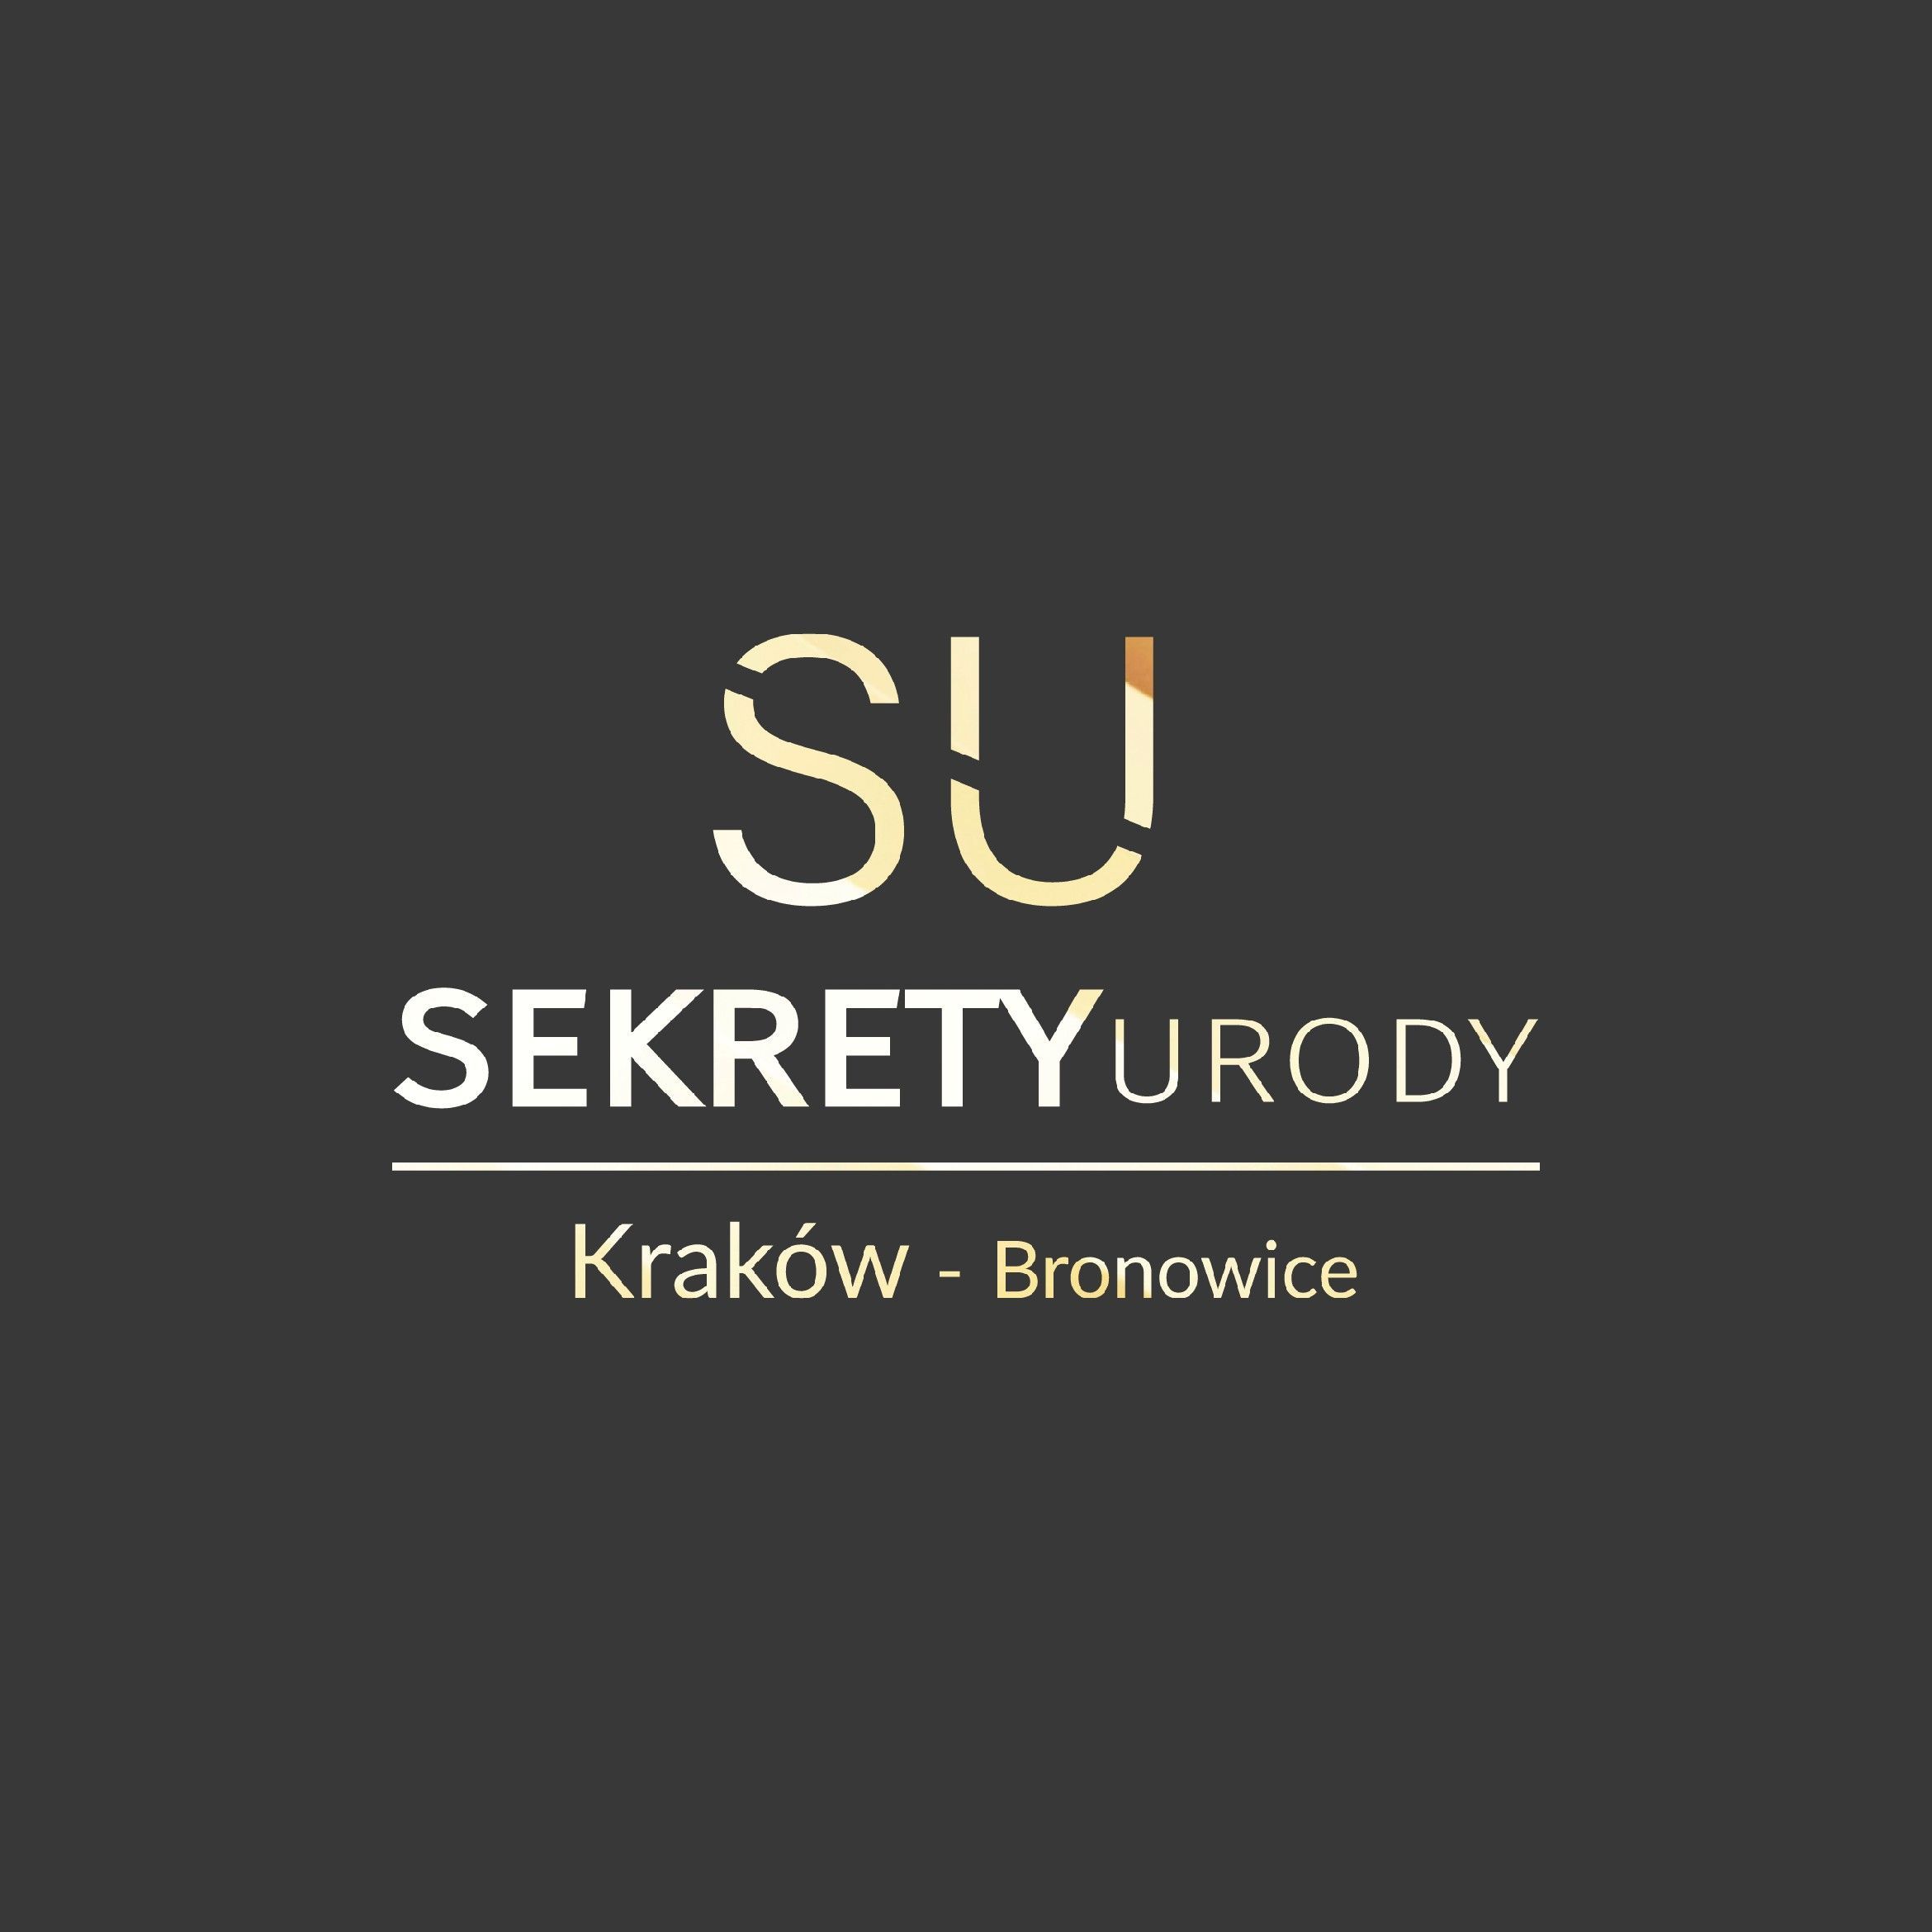 Sekrety urody Kraków - Bronowice, Stańczyka 7/LU2, 30-126, Kraków, Krowodrza